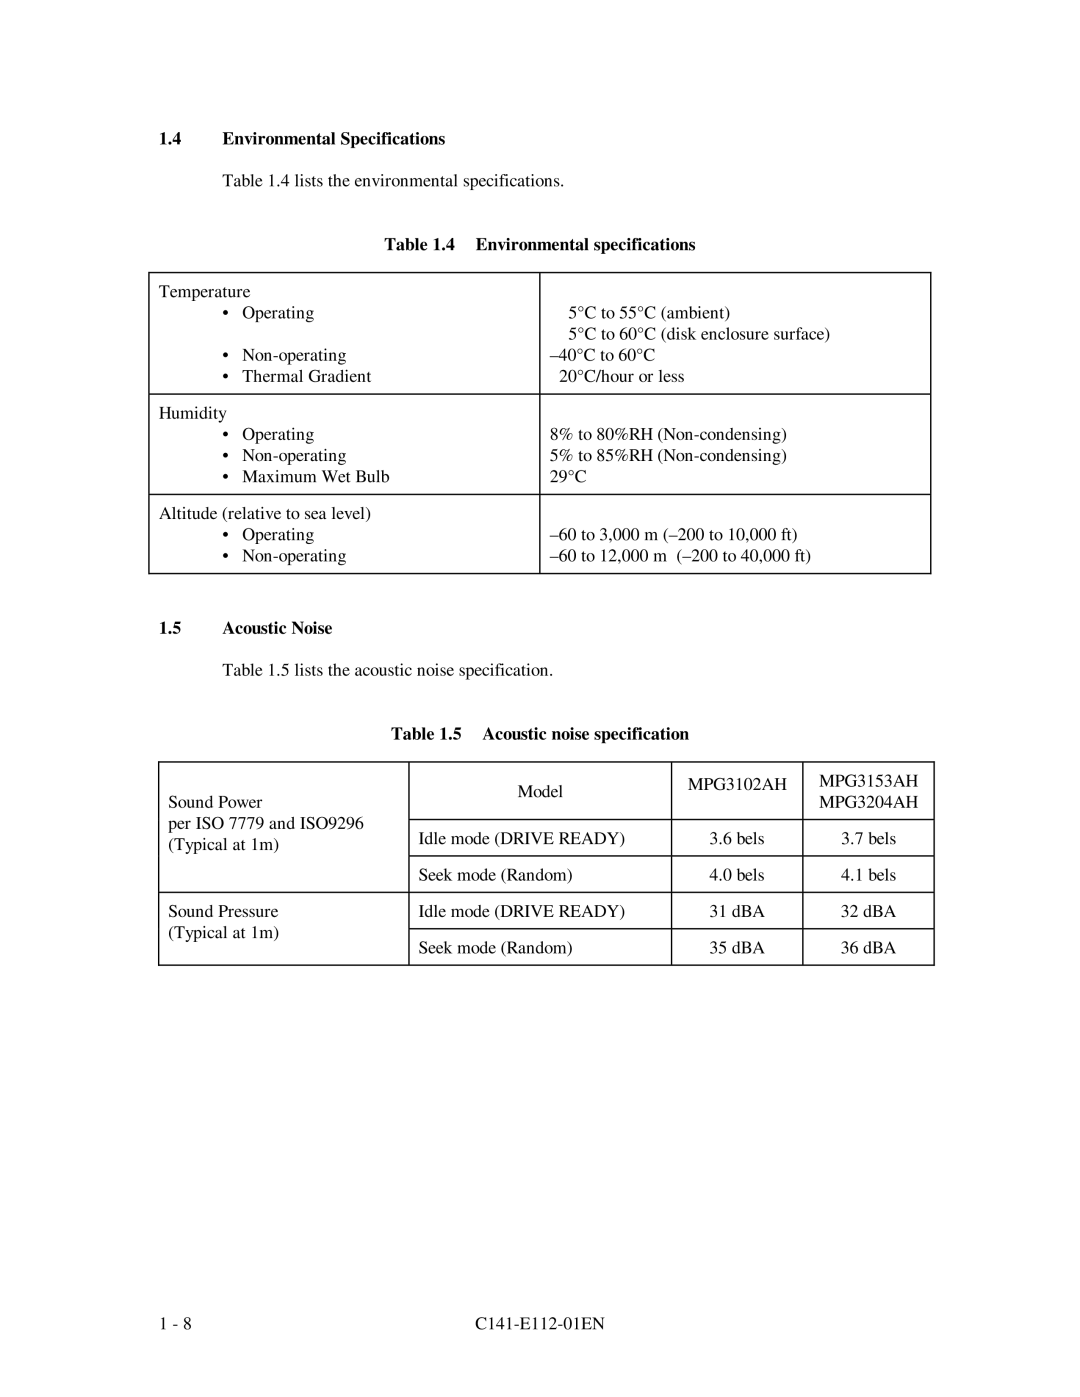 Fujitsu MPG3XXXAH manual Environmental Specifications, Environmental specifications, Acoustic Noise 